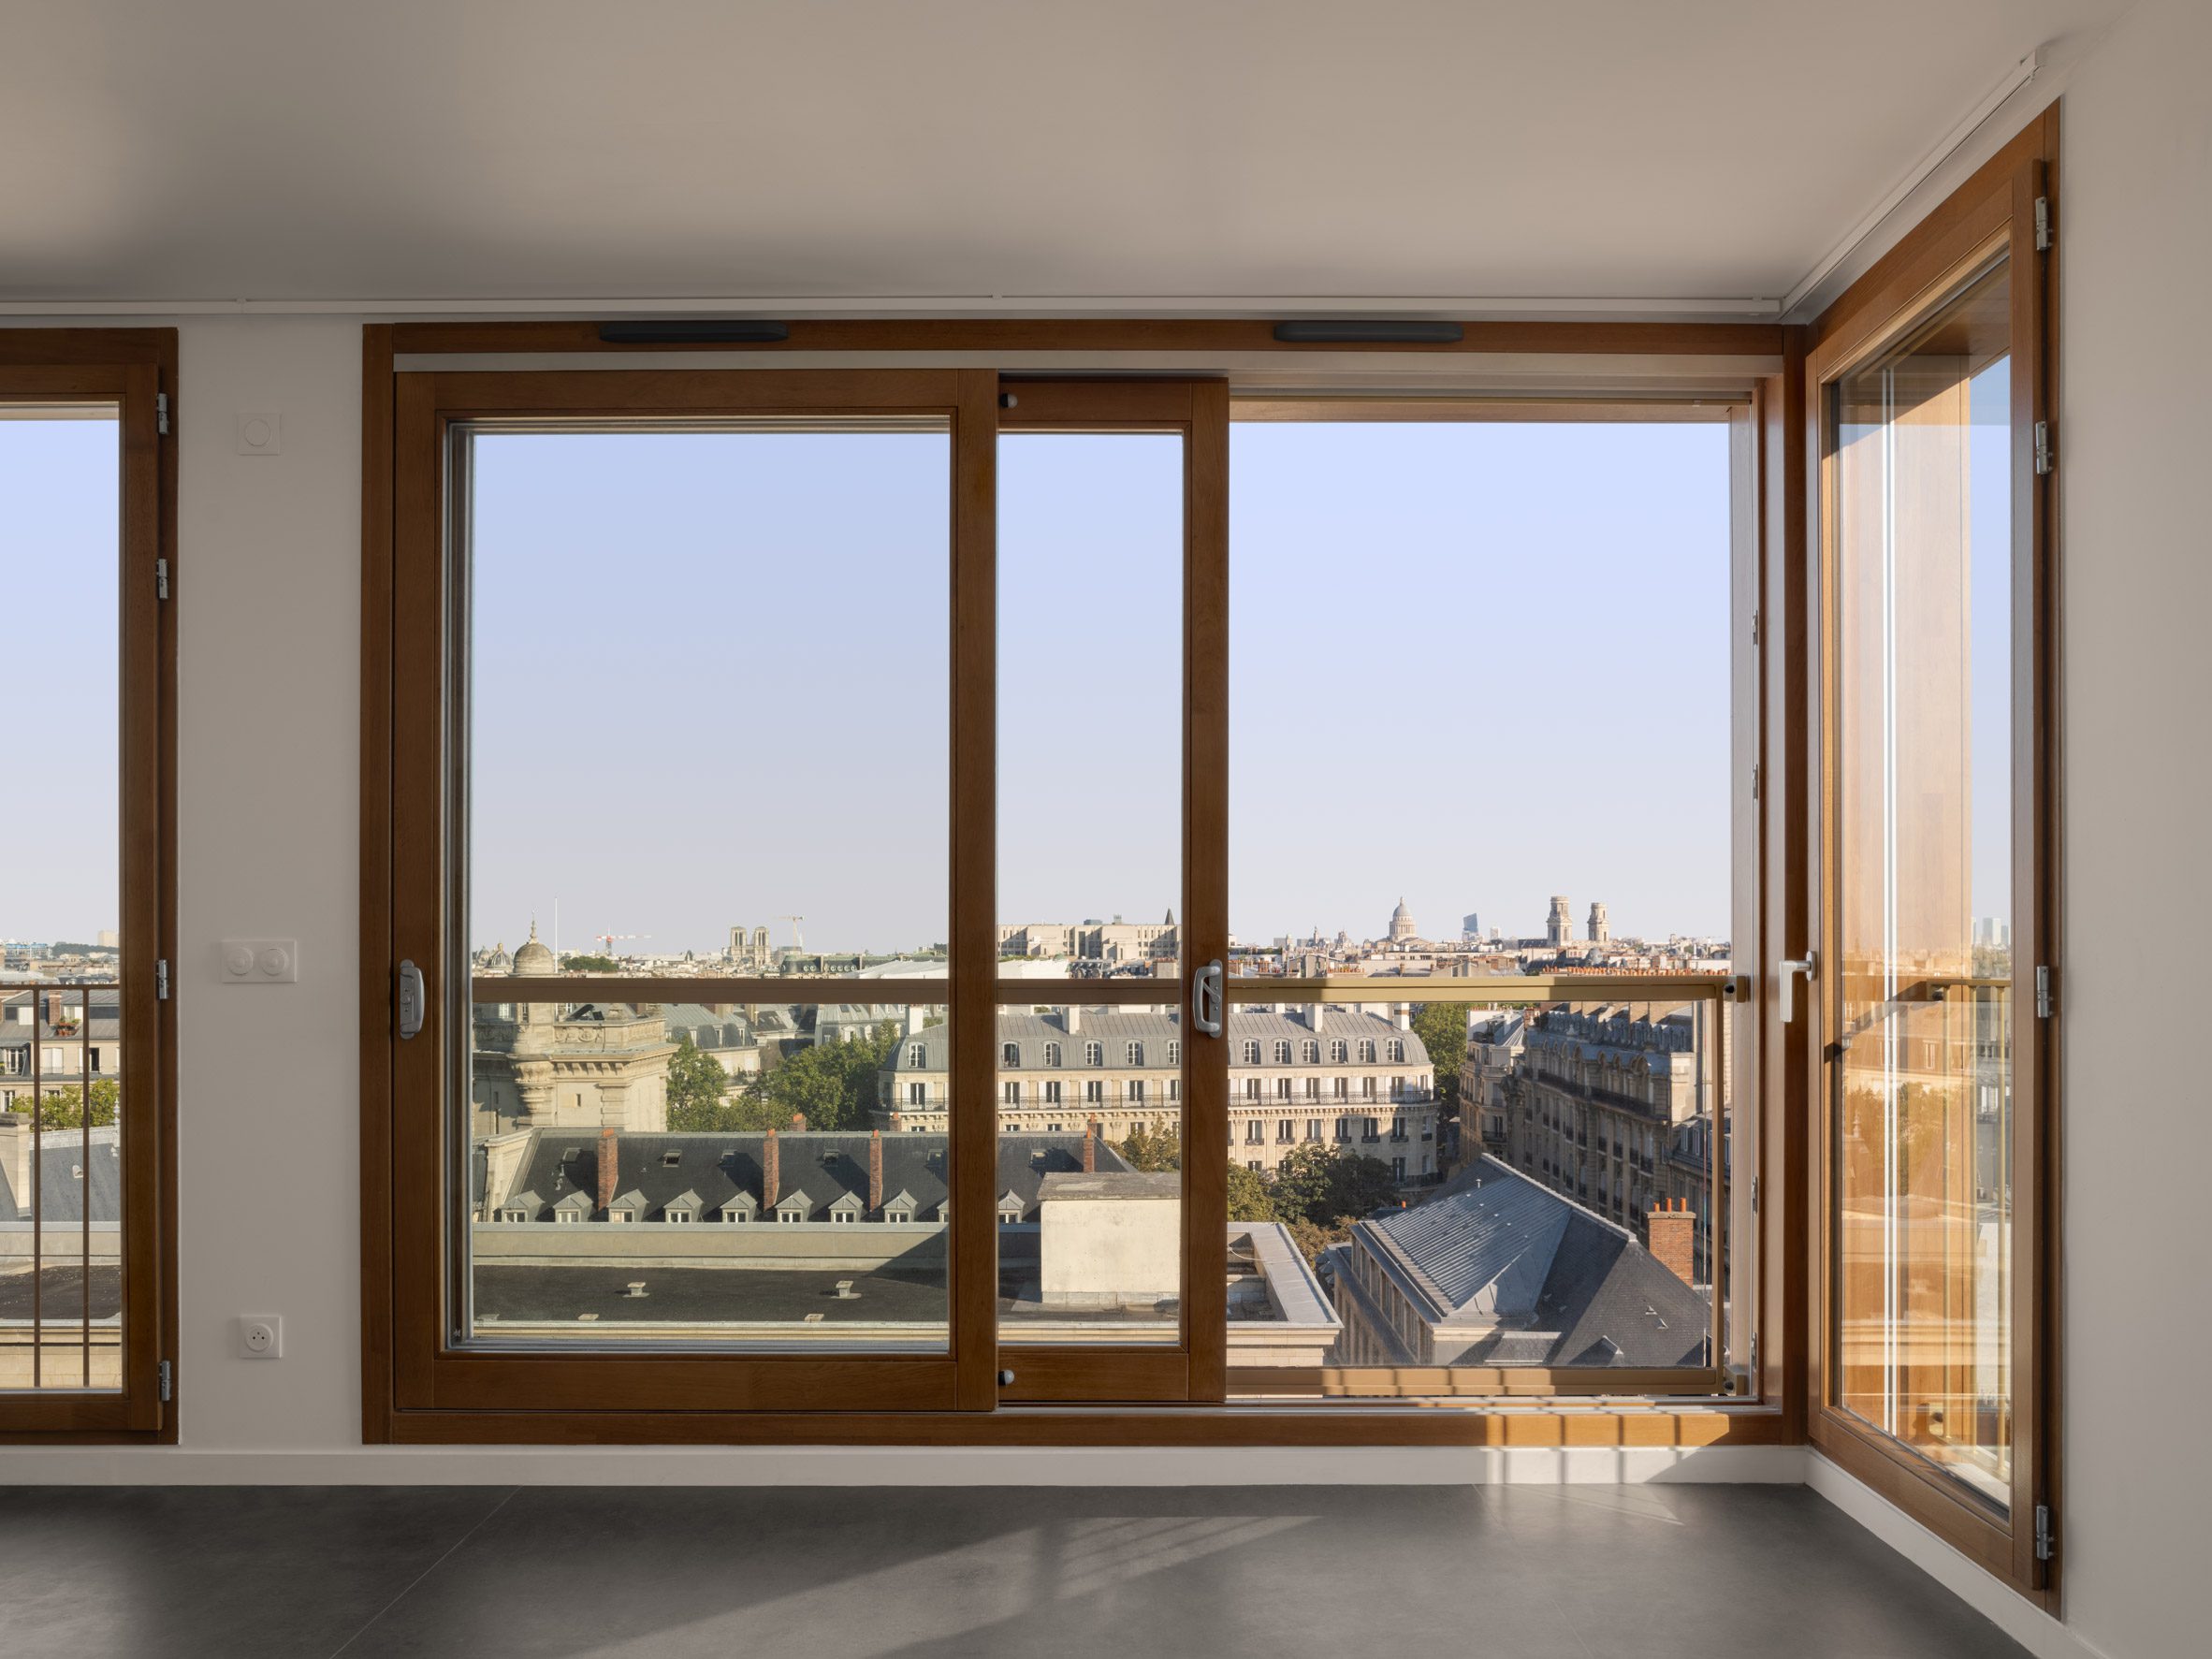 Apartment interior at Îlot Saint-Germain in Paris